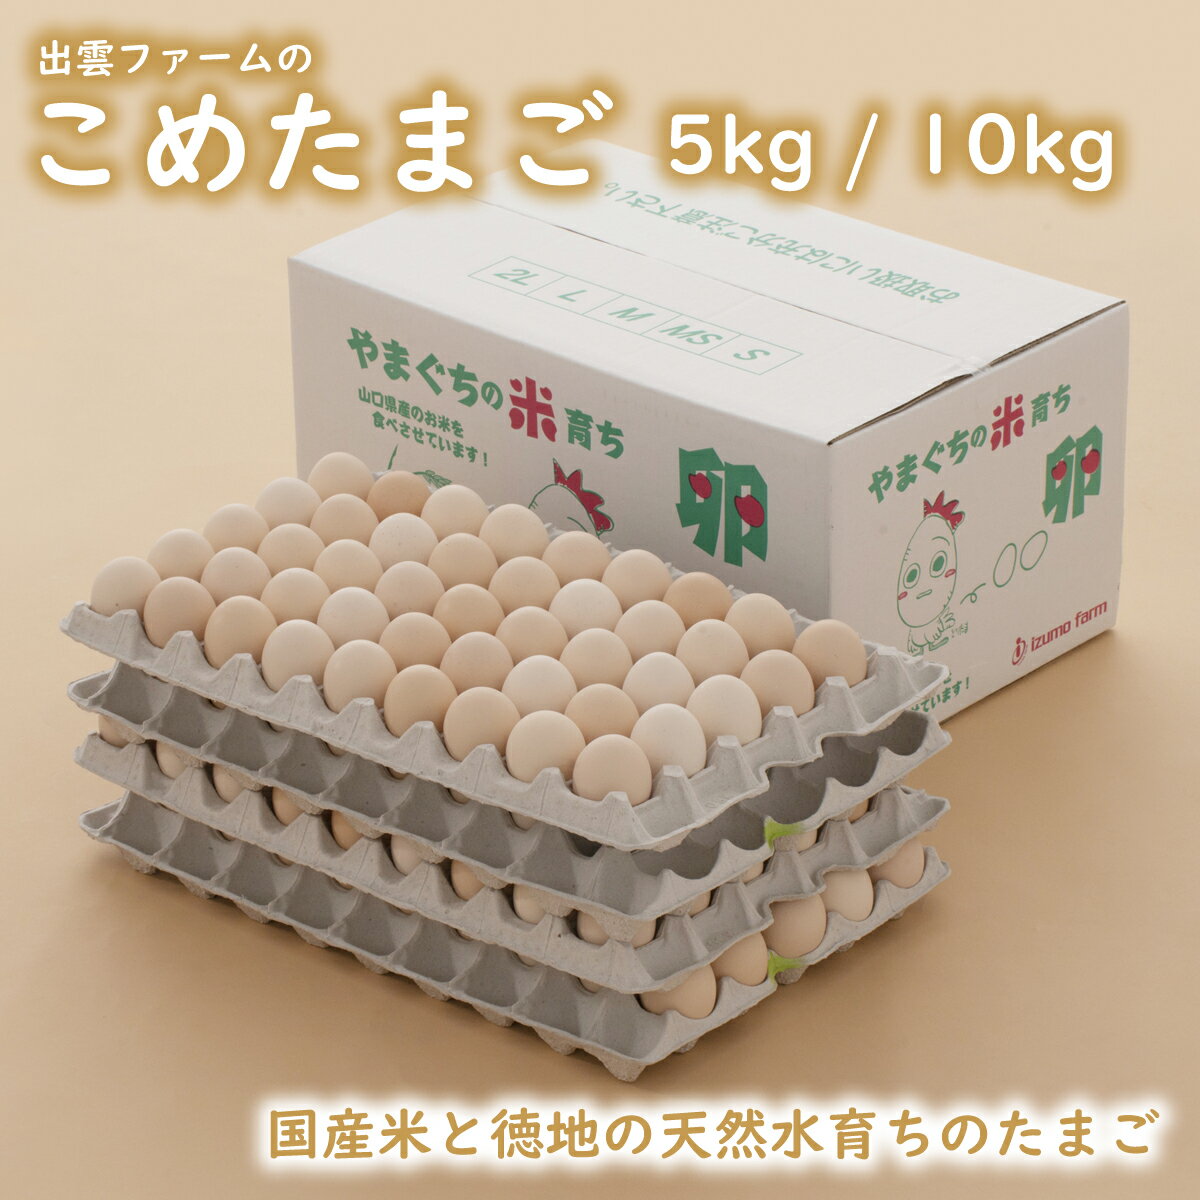 たまご 愛媛県産 卵 鶏卵 濃厚 こだわり製法 20個 サイズ不揃い 送料無料